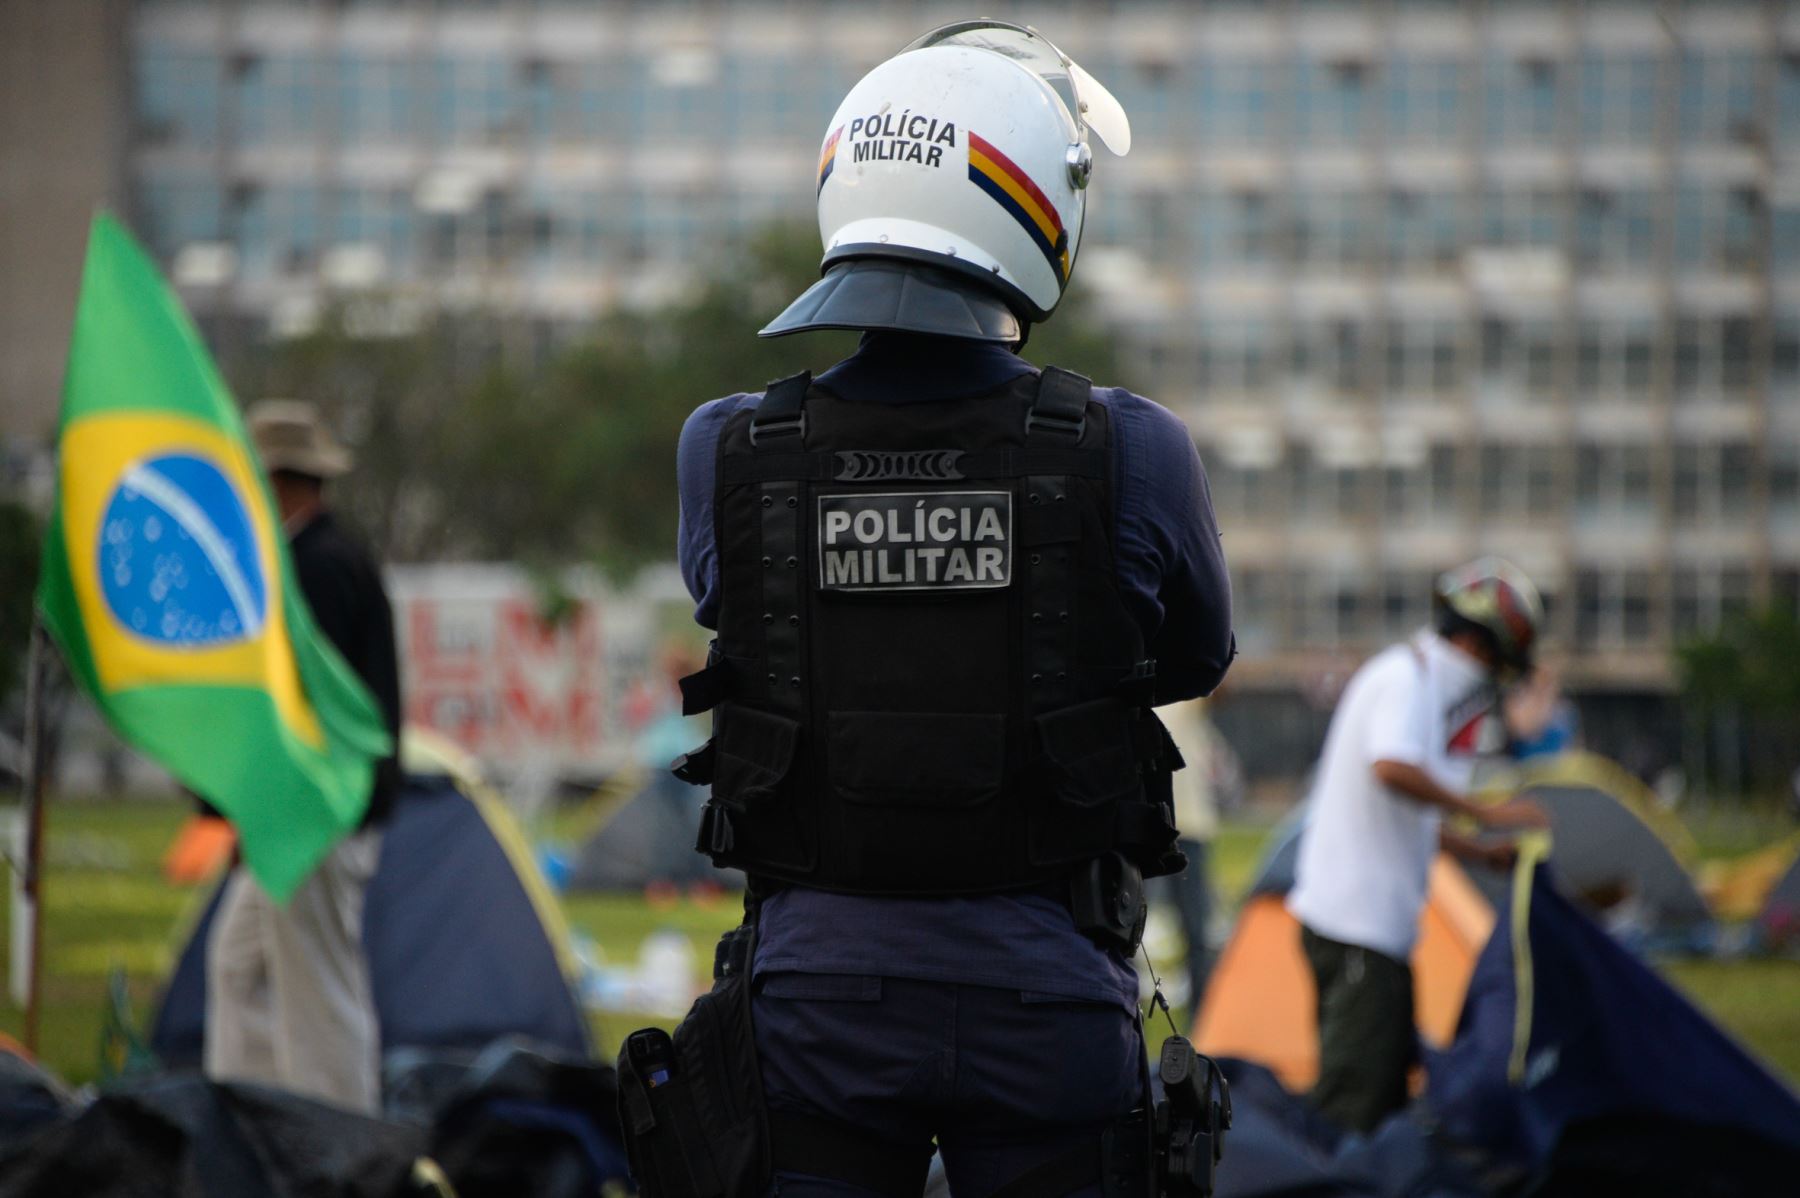 Brasil llega a su menor nivel en asesinatos luego de 15 años